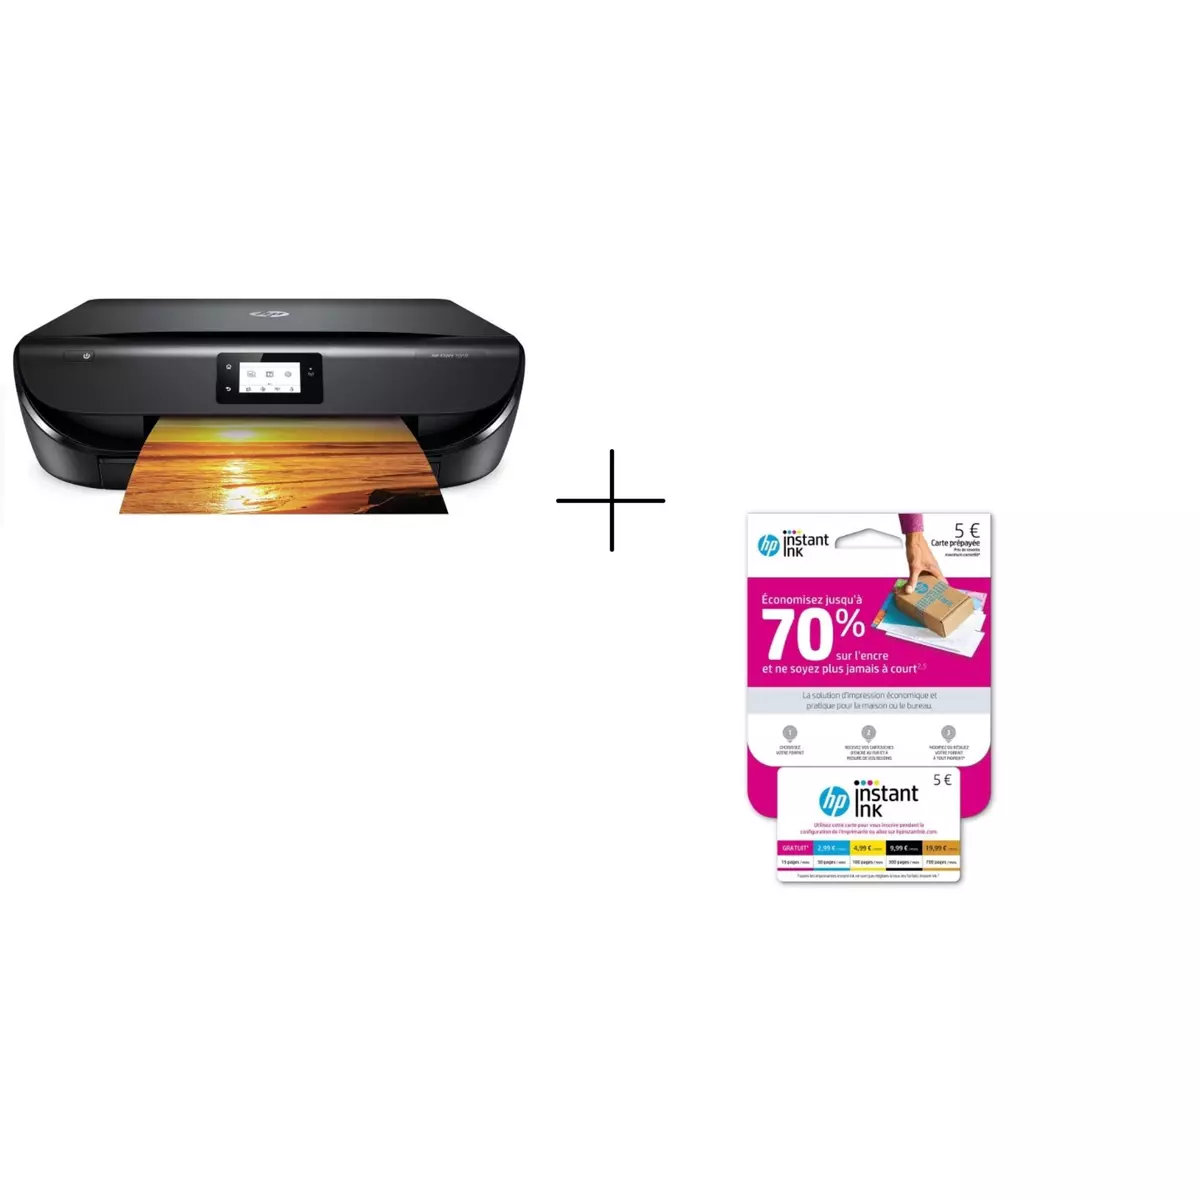 HP Imprimante multifonction - jet d'encre thermique - Wifi - ENVY 5010 + Carte prépayée Instant Ink offerte